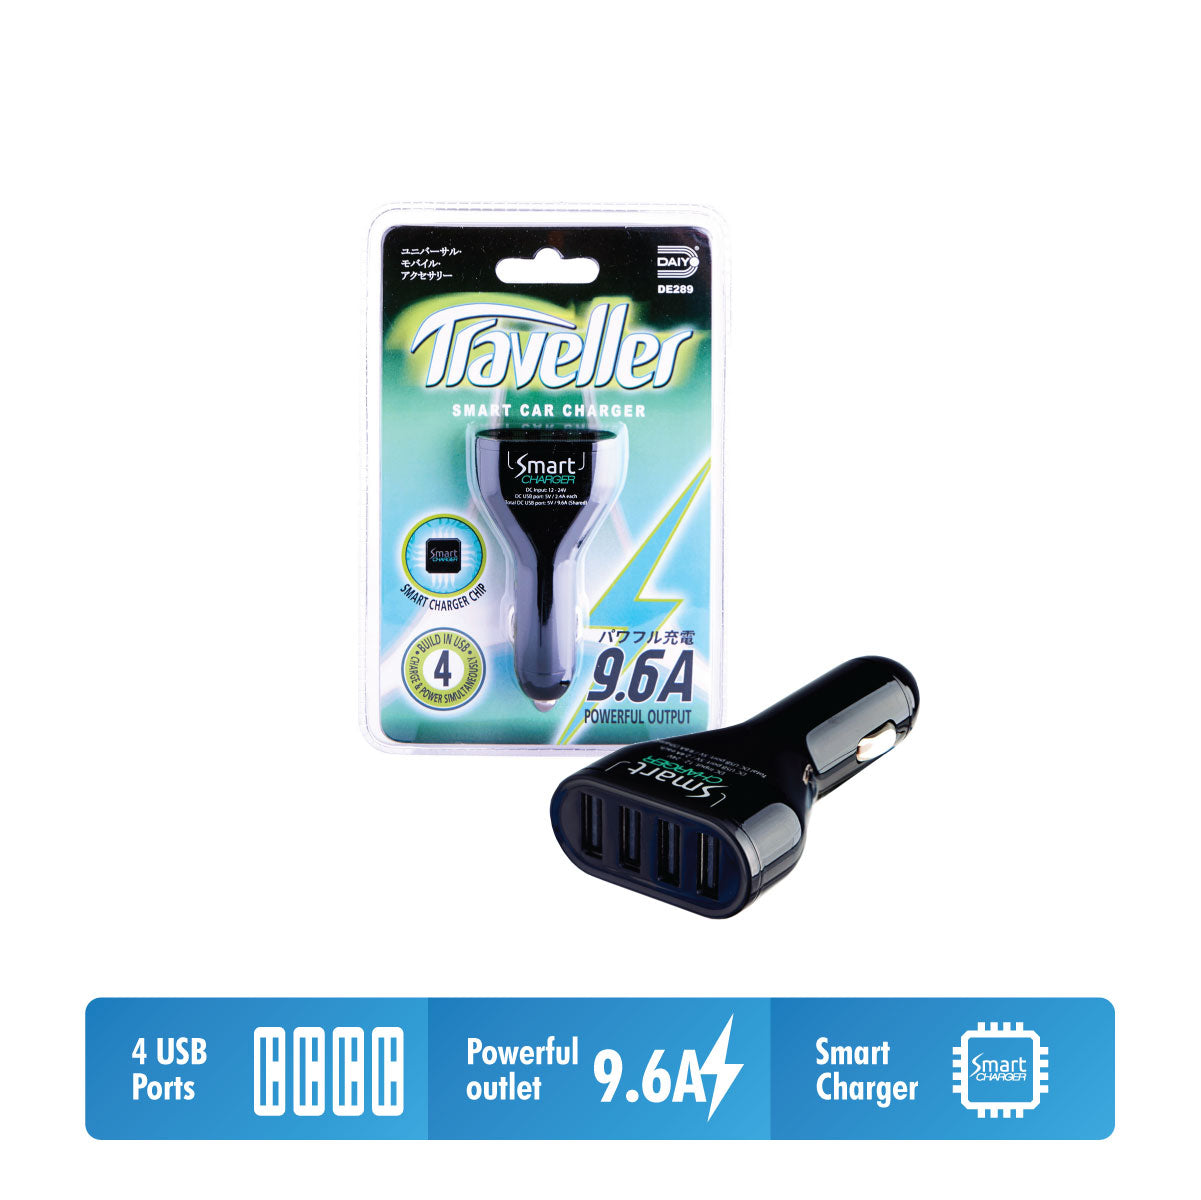 Daiyo DE 289 9.6A Smart Quad USB Car Charger Black